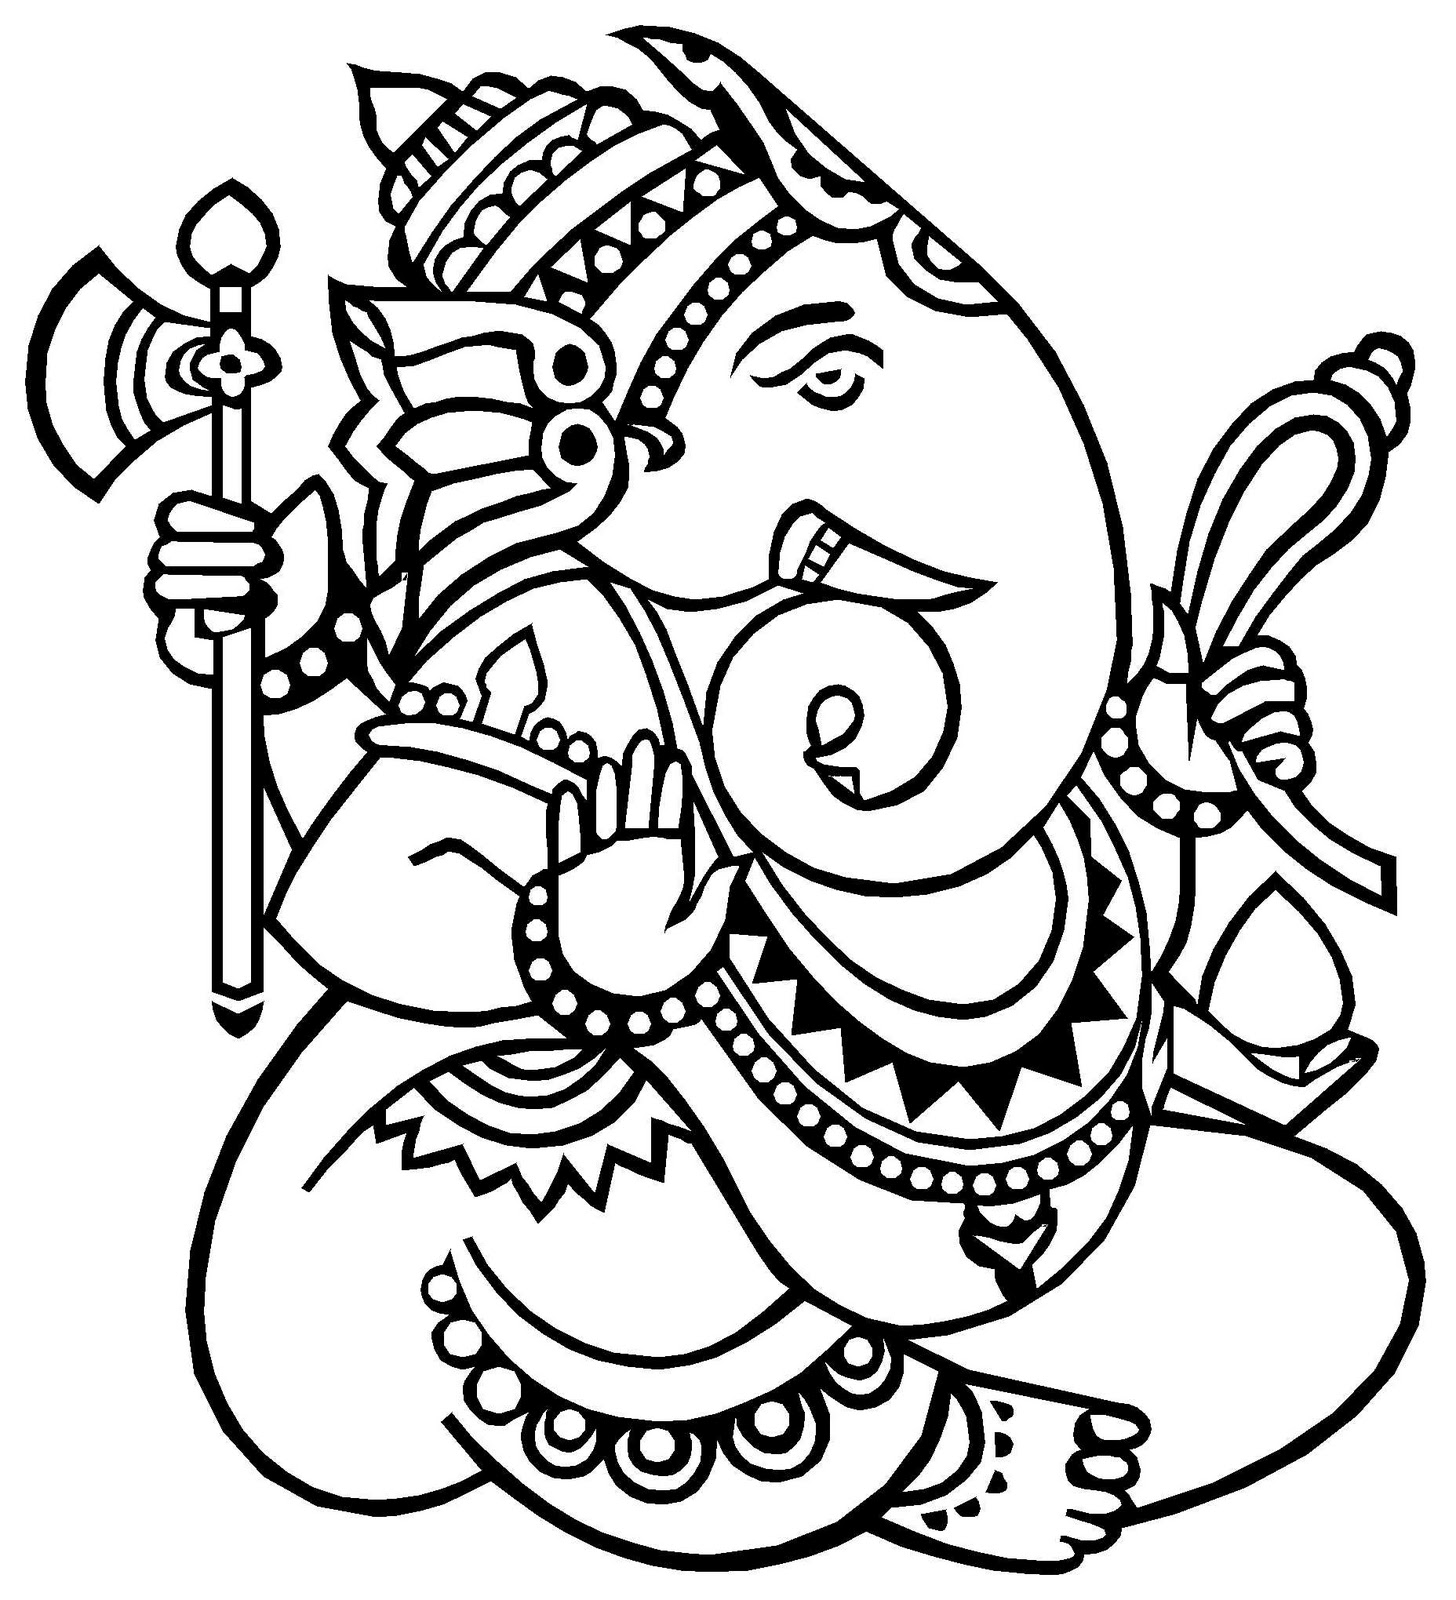 Lord Ganesha Drawing - Cliparts.co